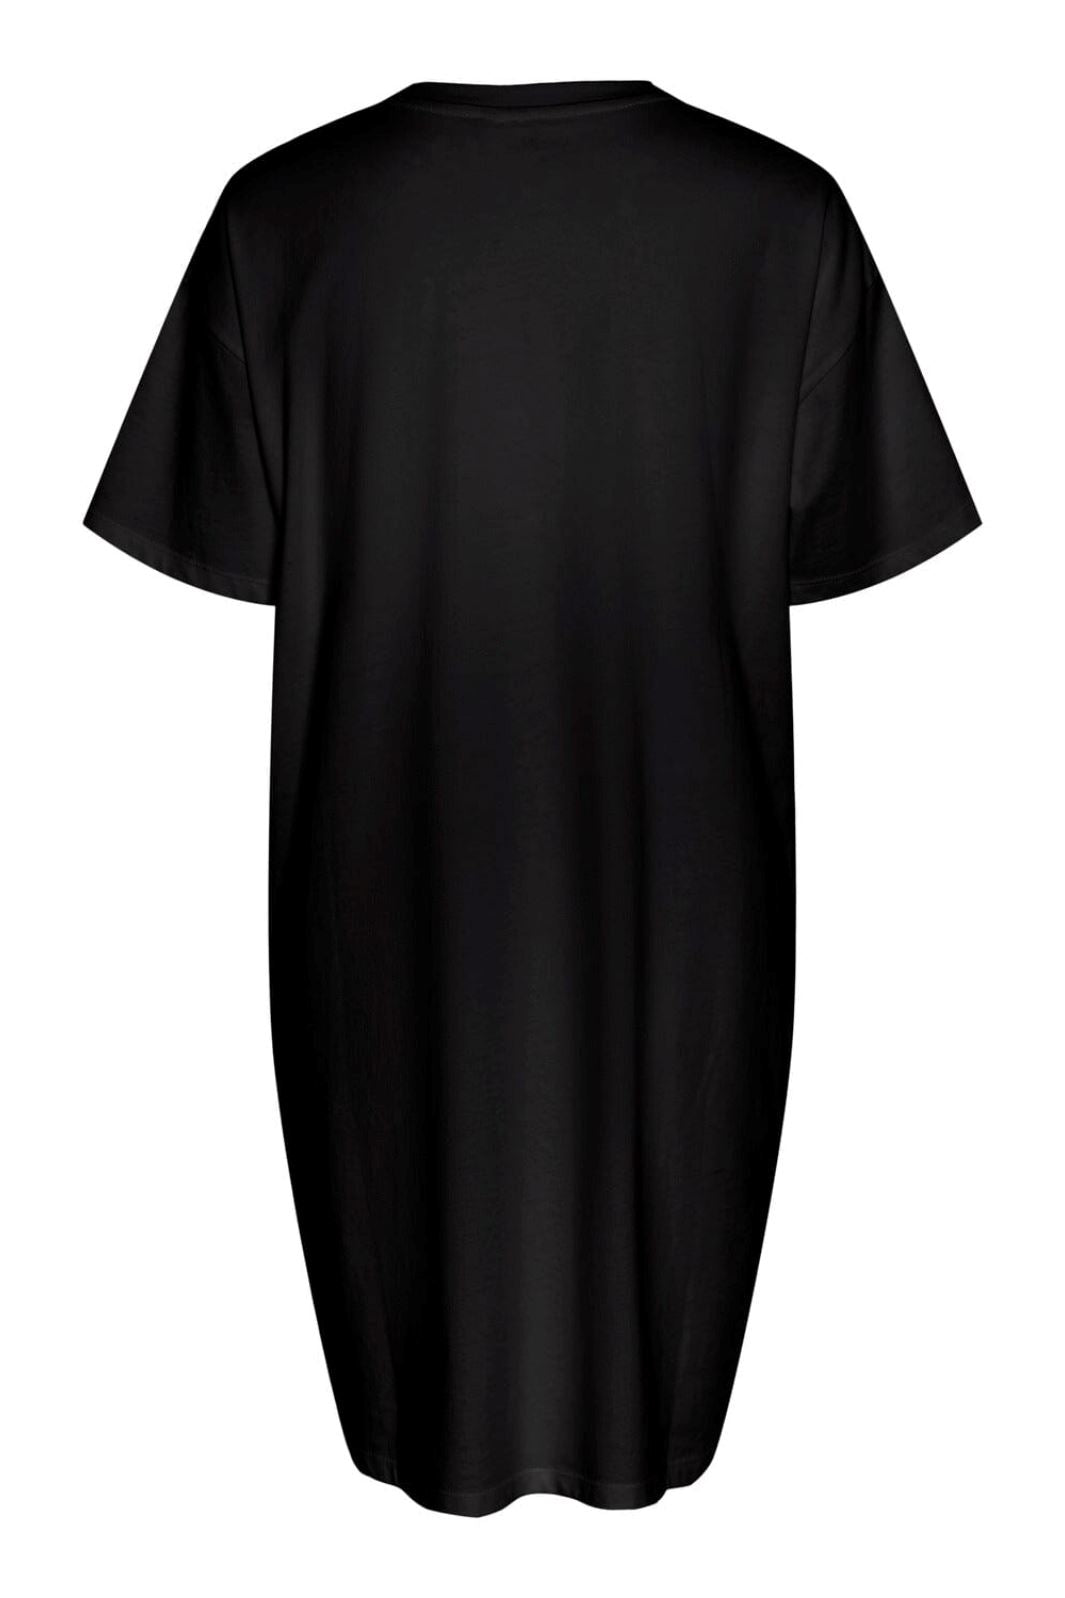 Pieces - Pcria Ss Dress - 4476701 Black Kjoler 